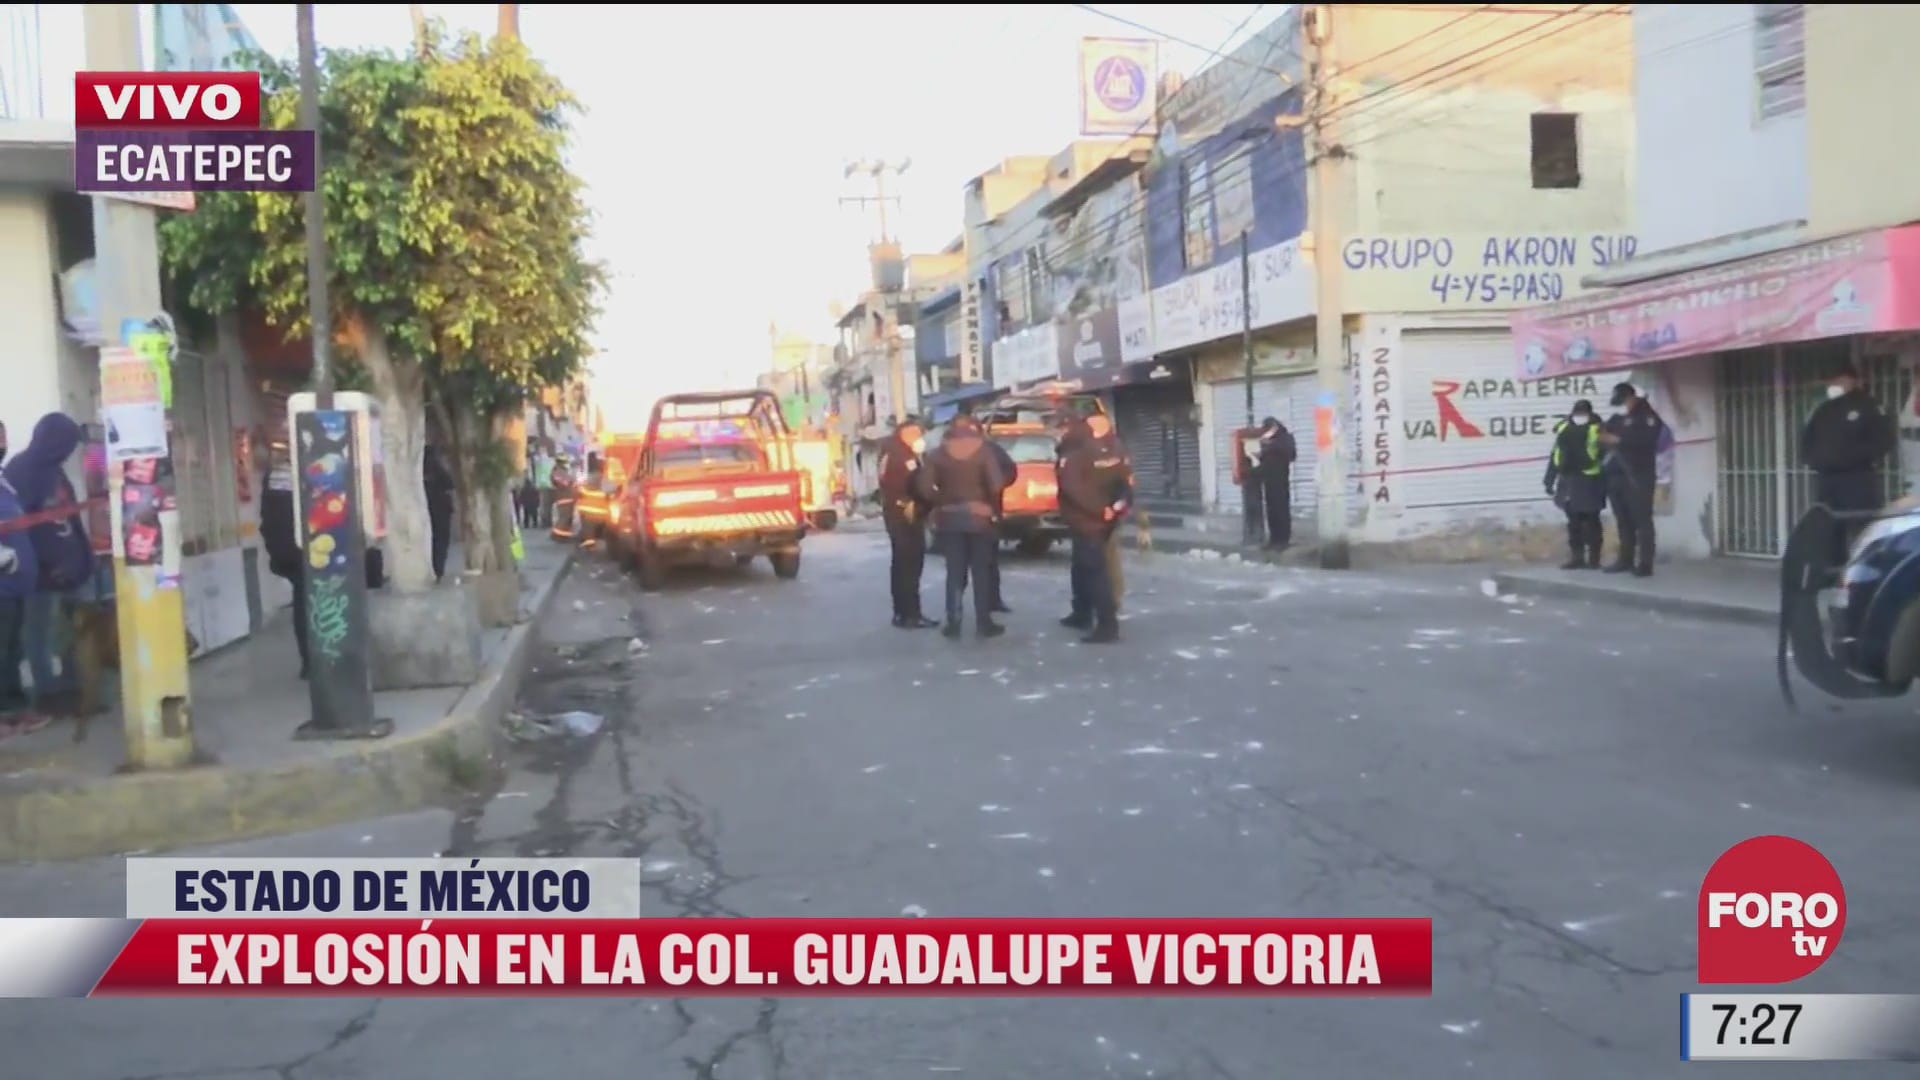 resguardan inmueble tras explosion de gas en ecatepec estado de mexico